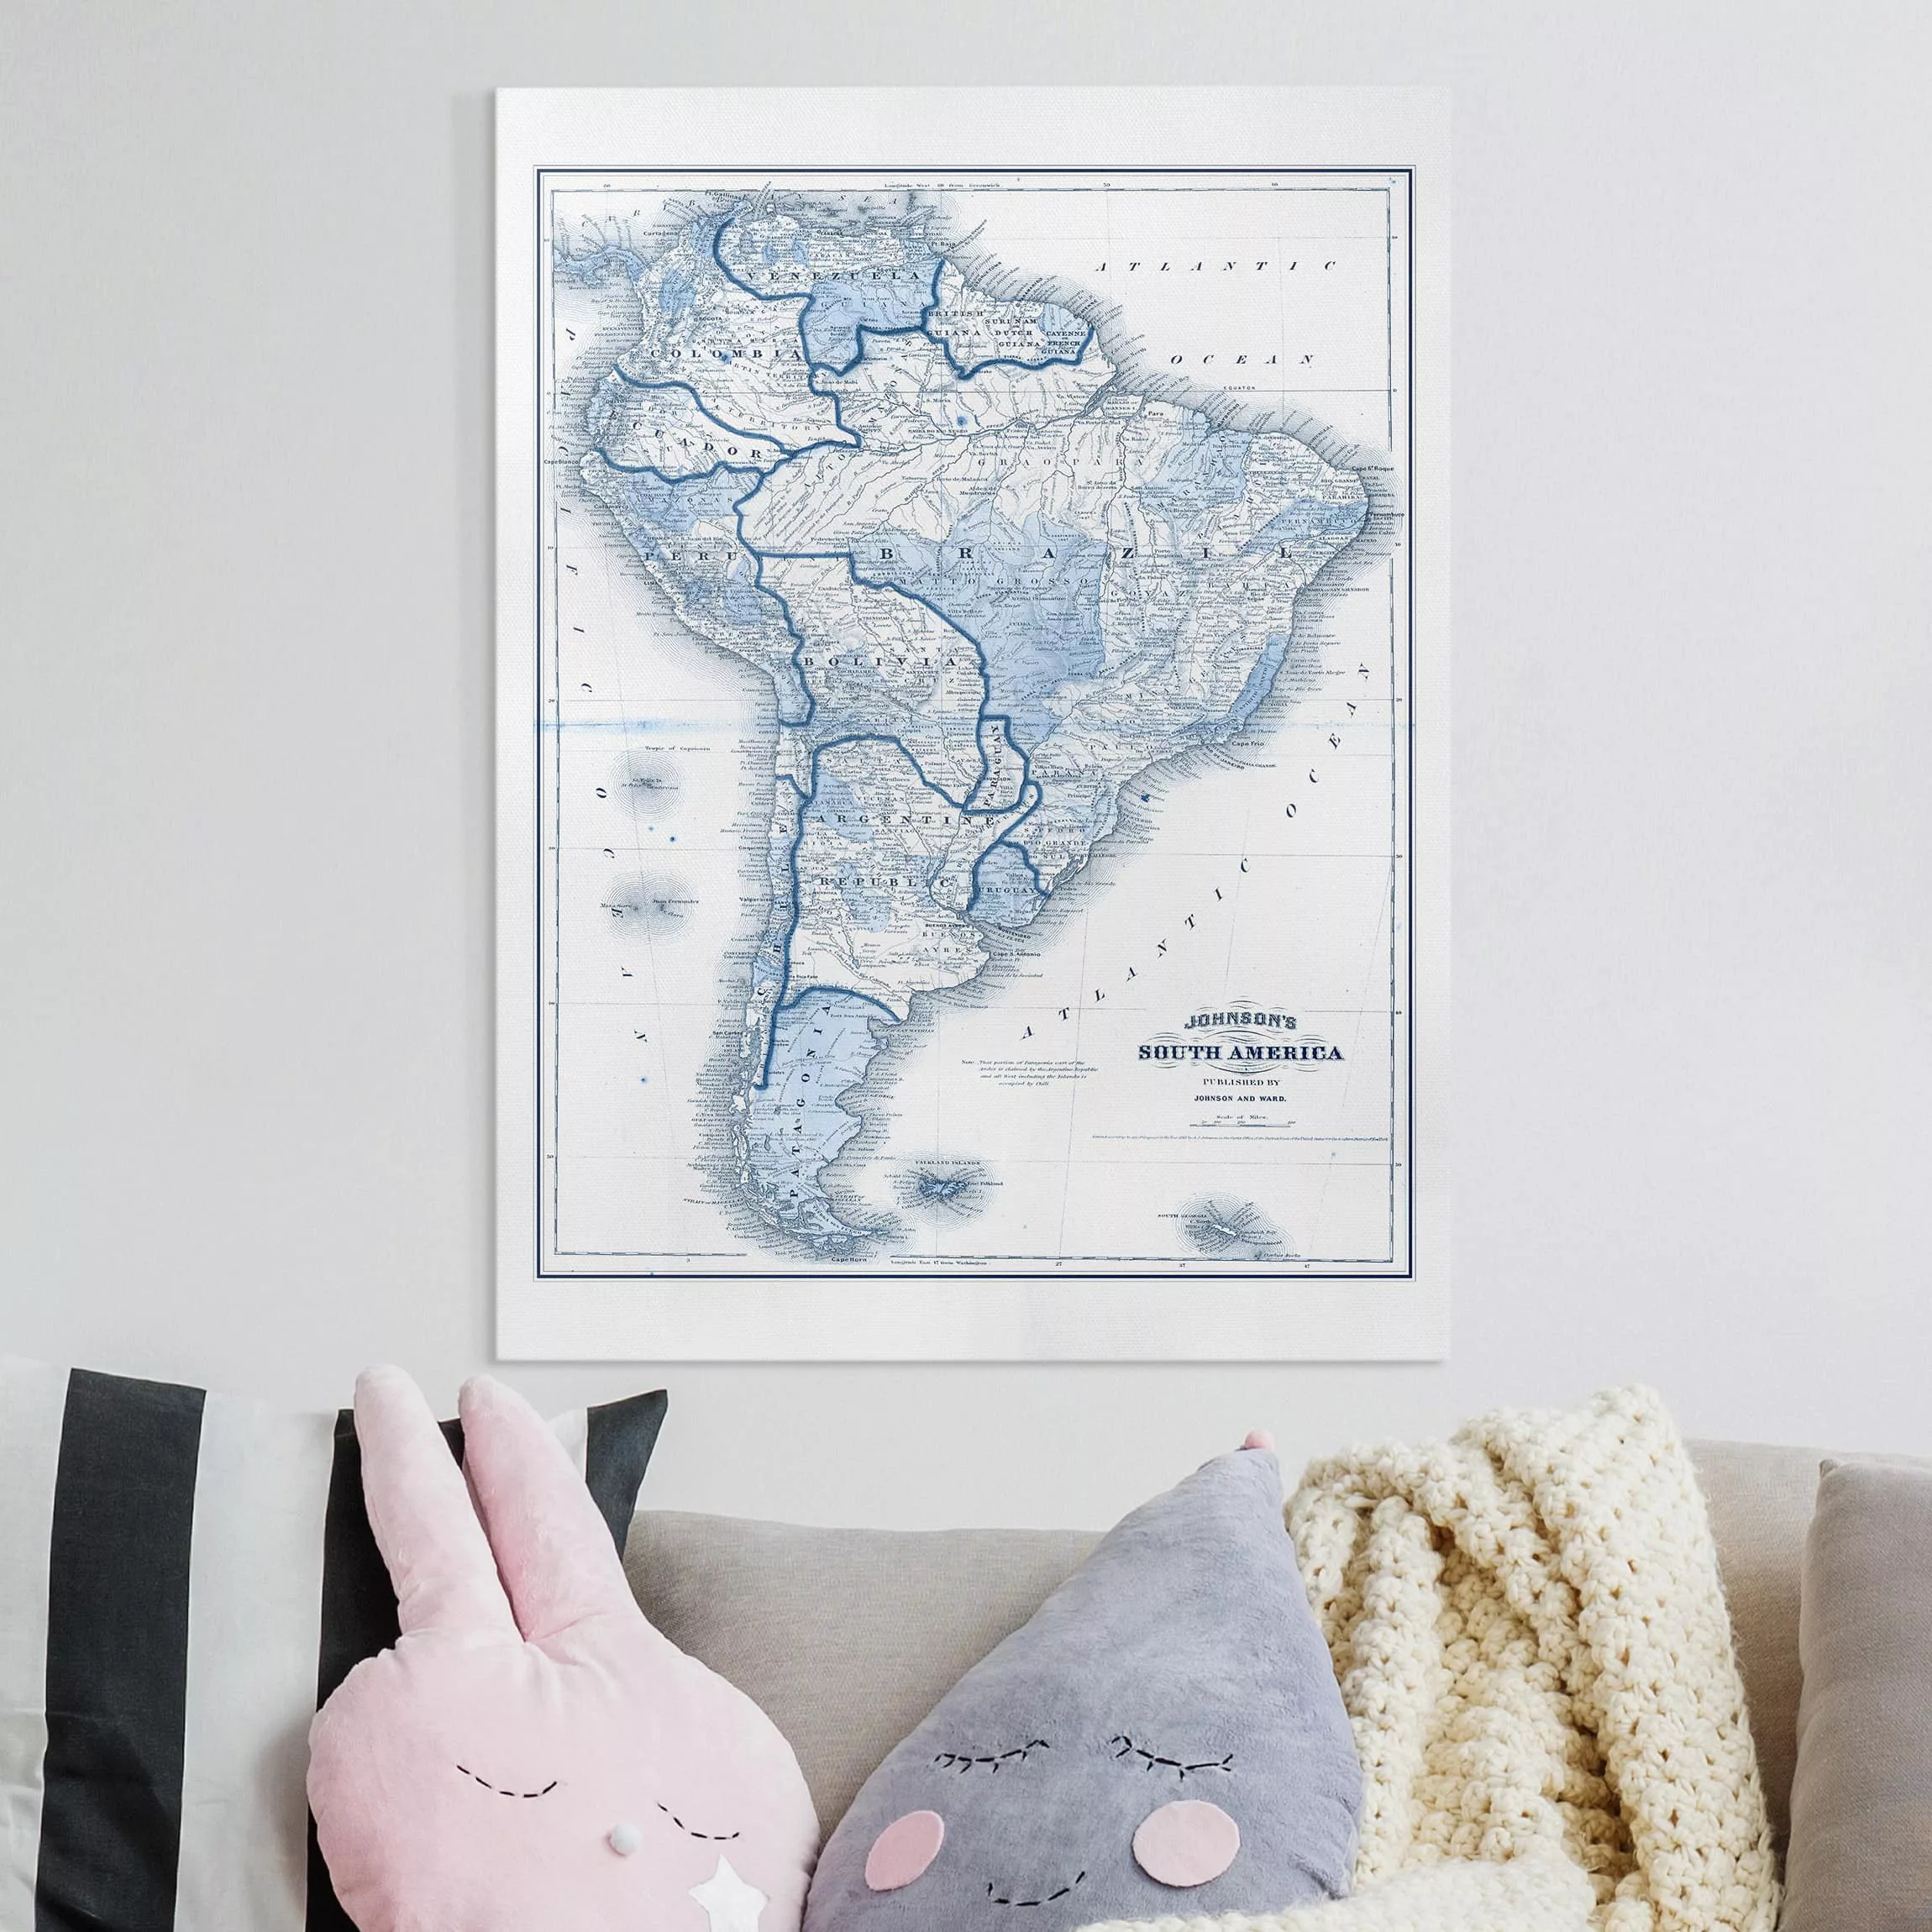 Leinwandbild Landkarte - Hochformat Karte in Blautönen - Südamerika günstig online kaufen